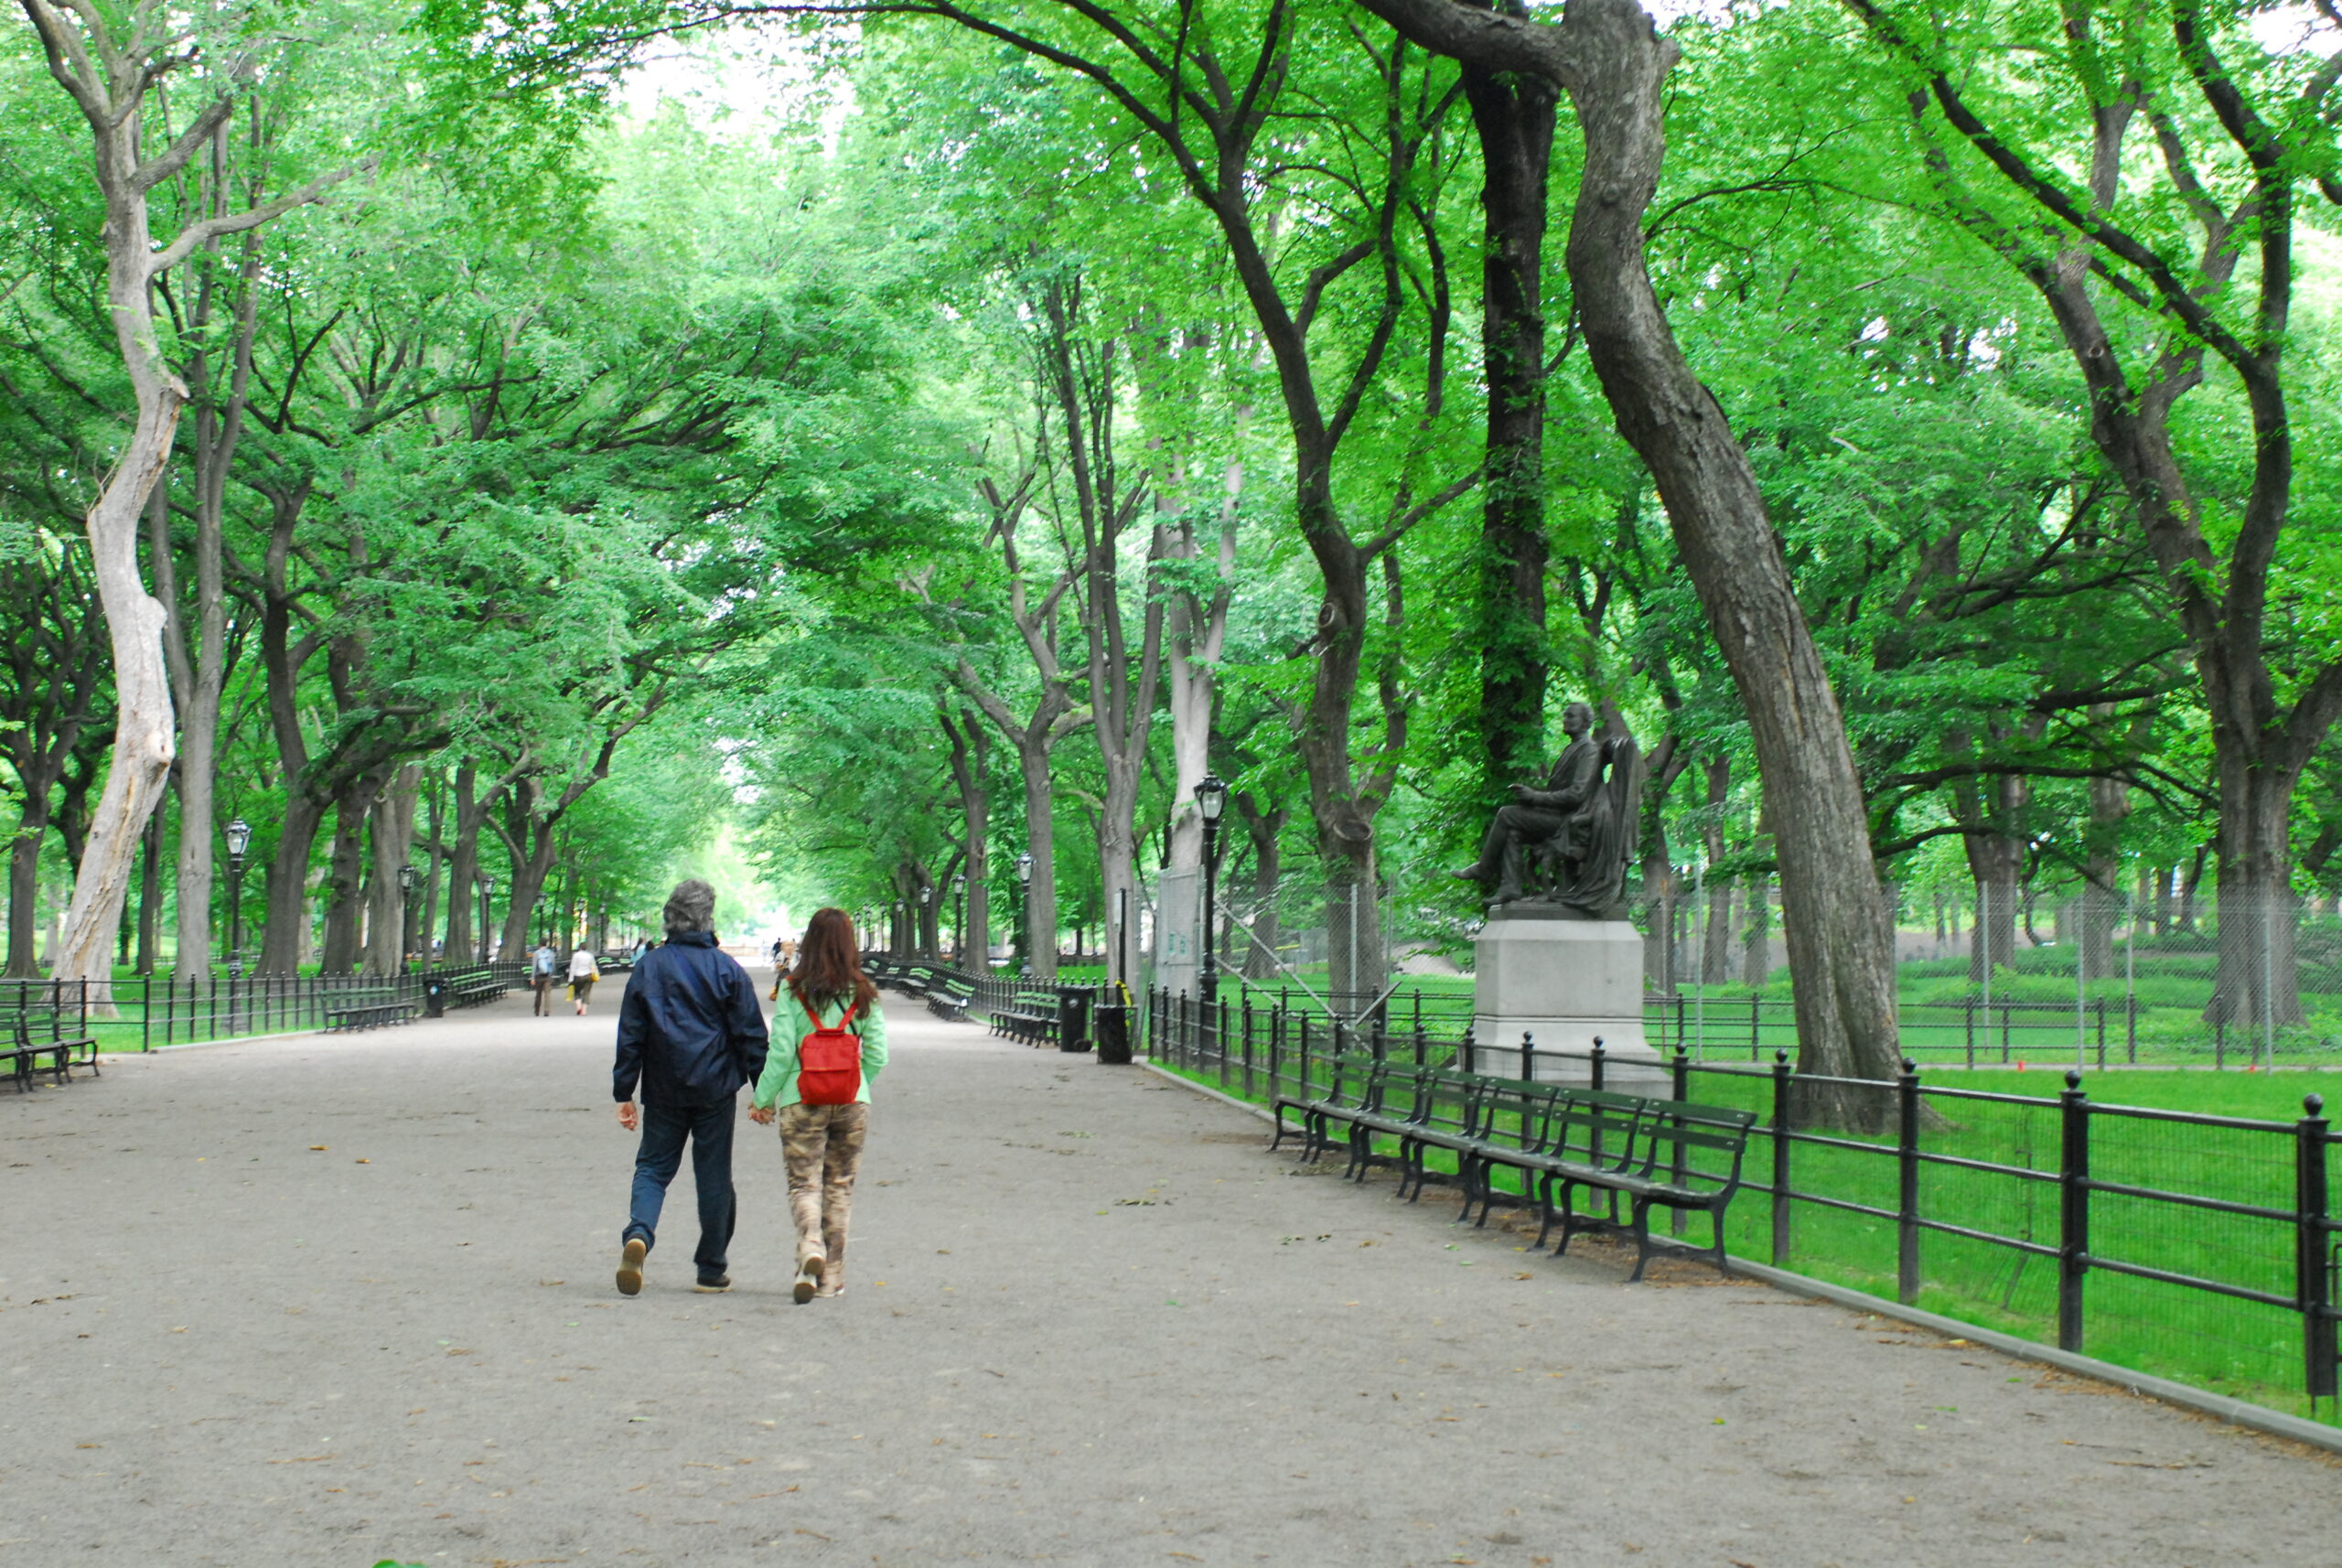 Take a stroll through Central Park